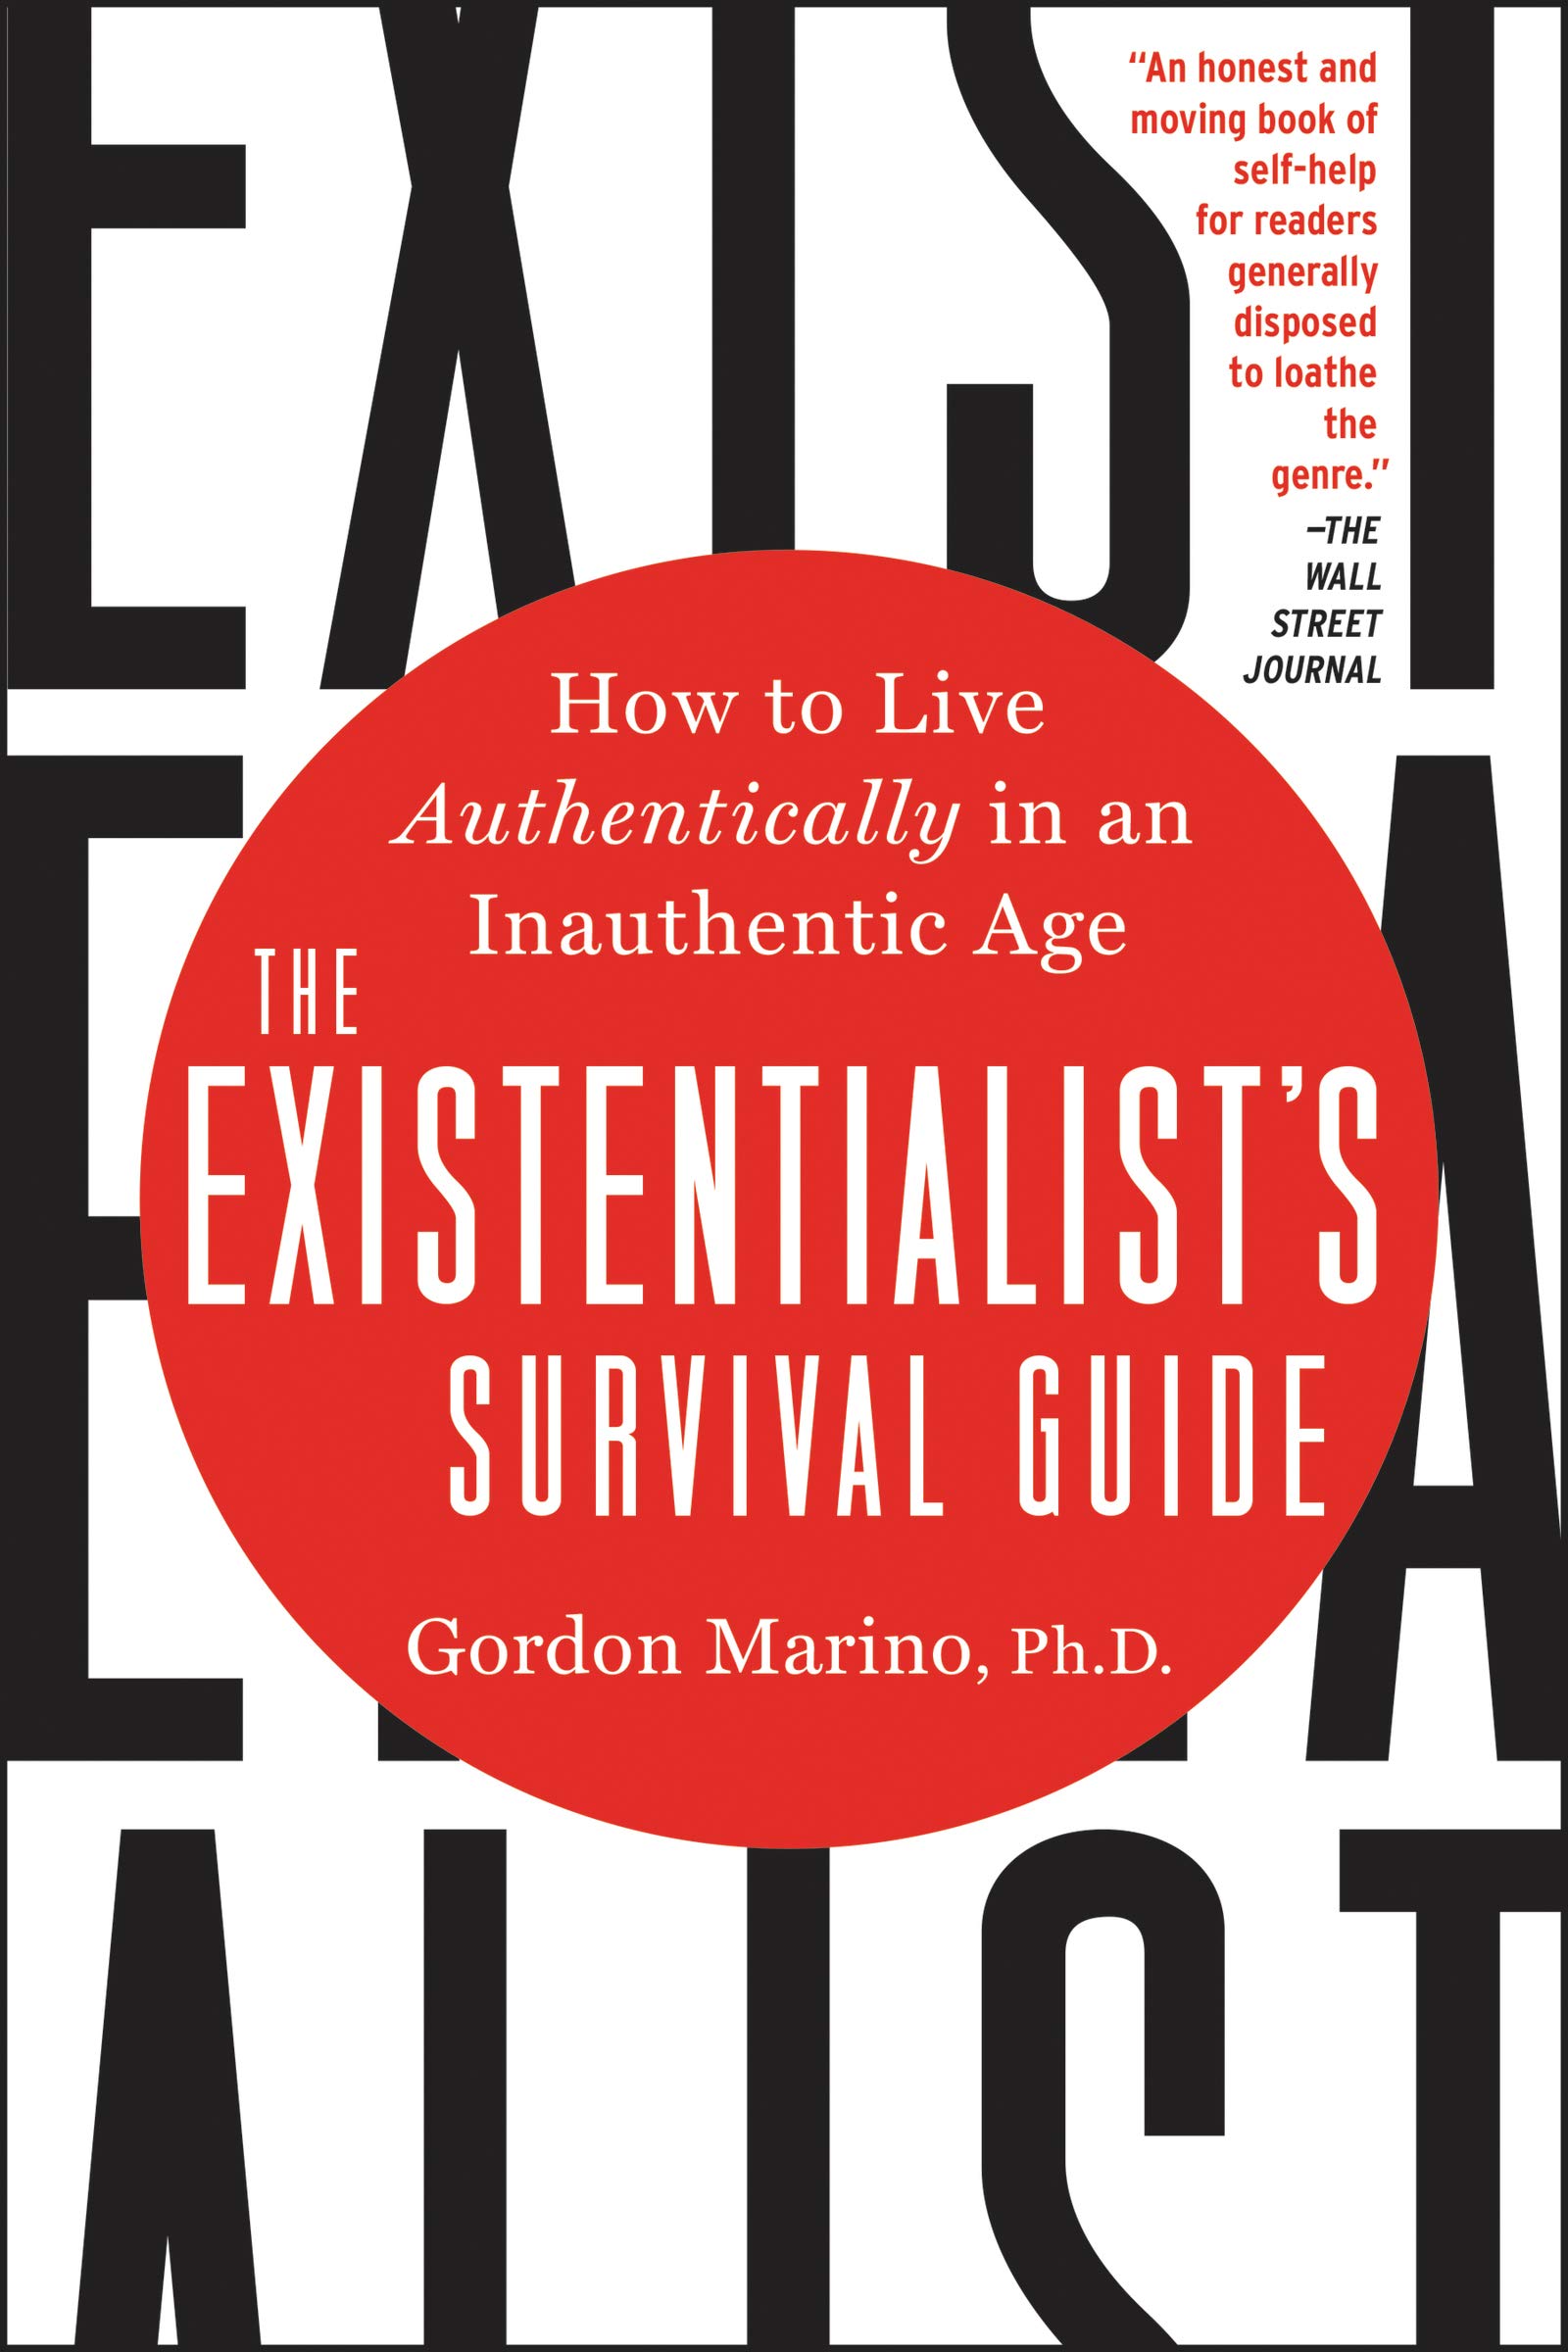 Existentialist's Survival Guide | Gordon Marino